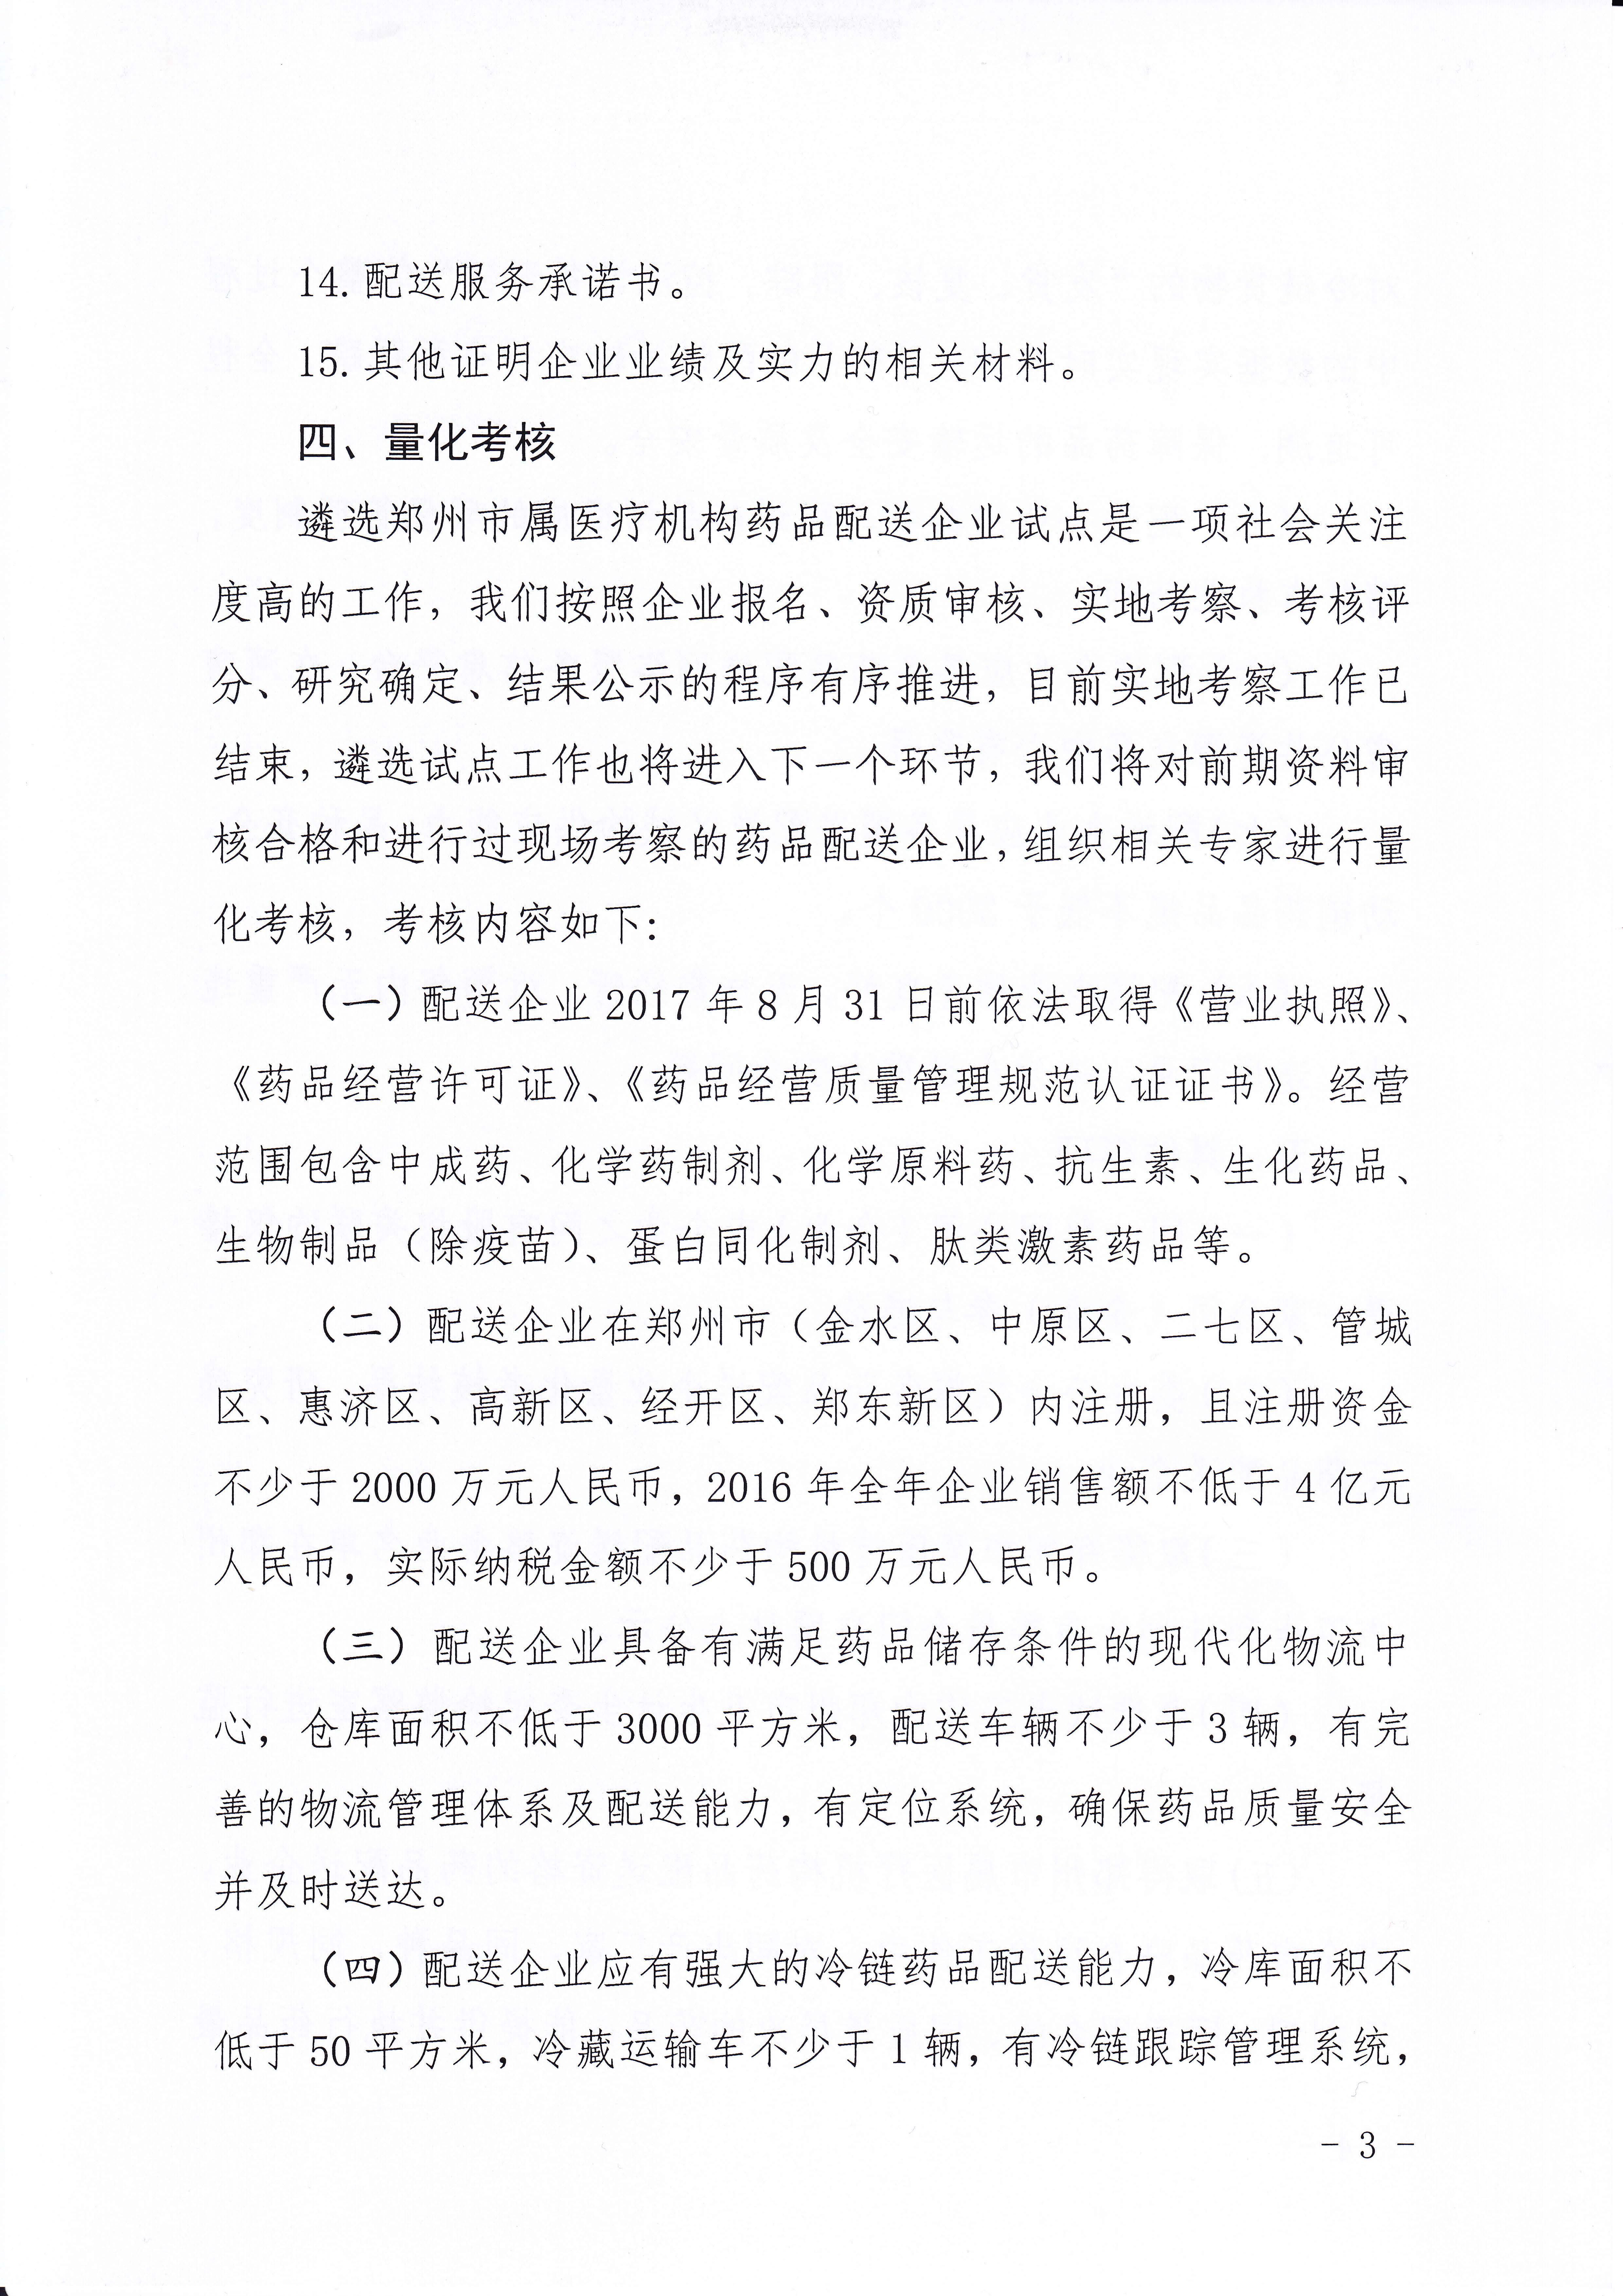 生育委员会关于遴选郑州市属医疗机构药品配送企业试点有关事项的公告